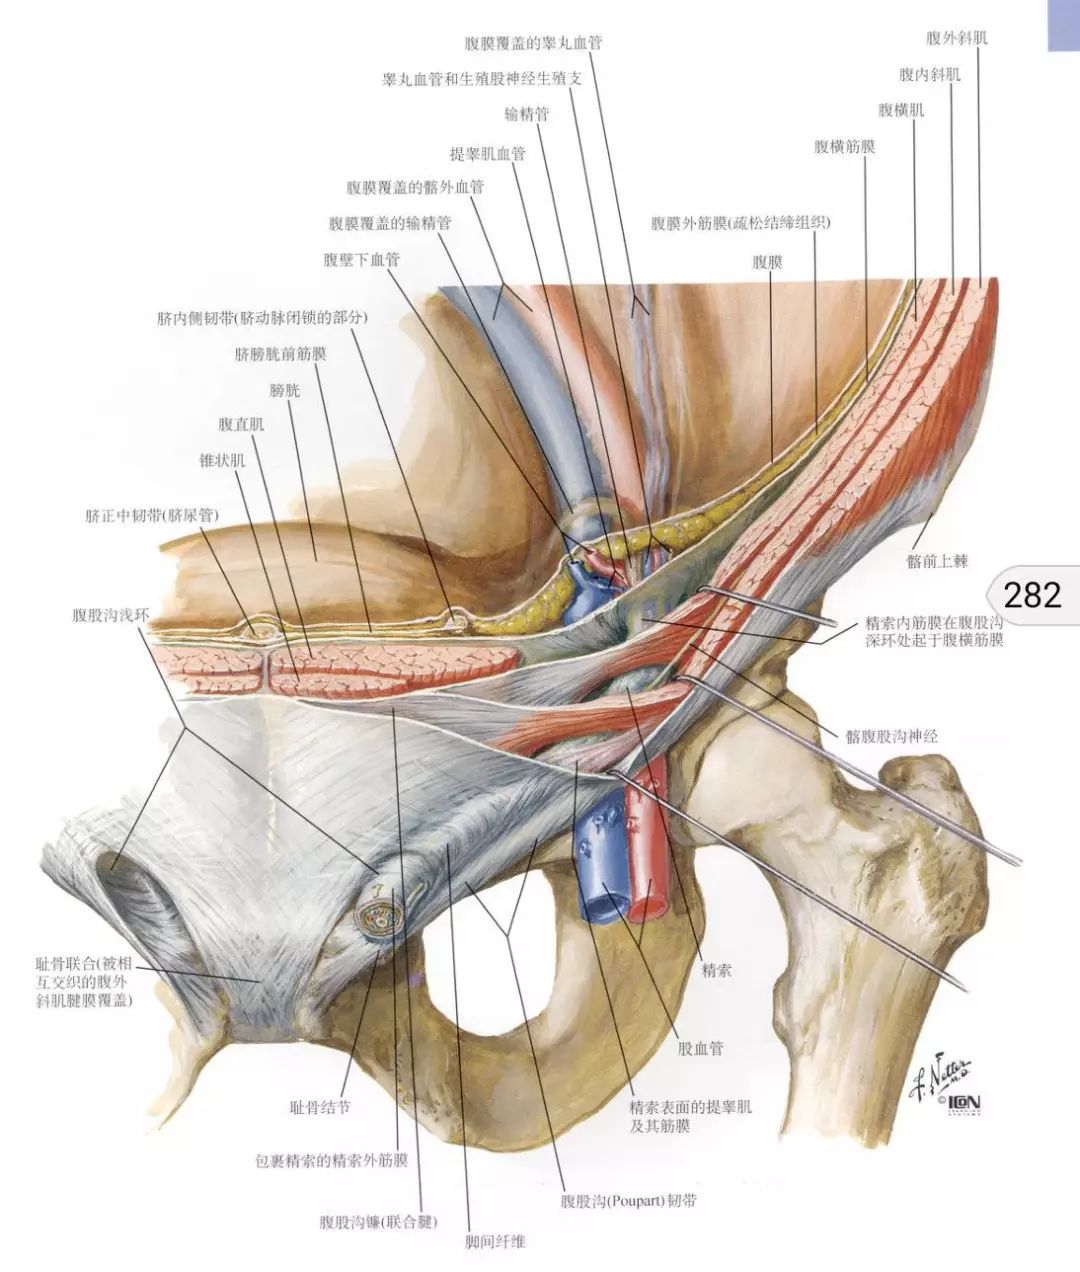 我们需要特别注意的几个解剖名词:腹股沟韧带,腔隙韧带,联合腱,腹横肌